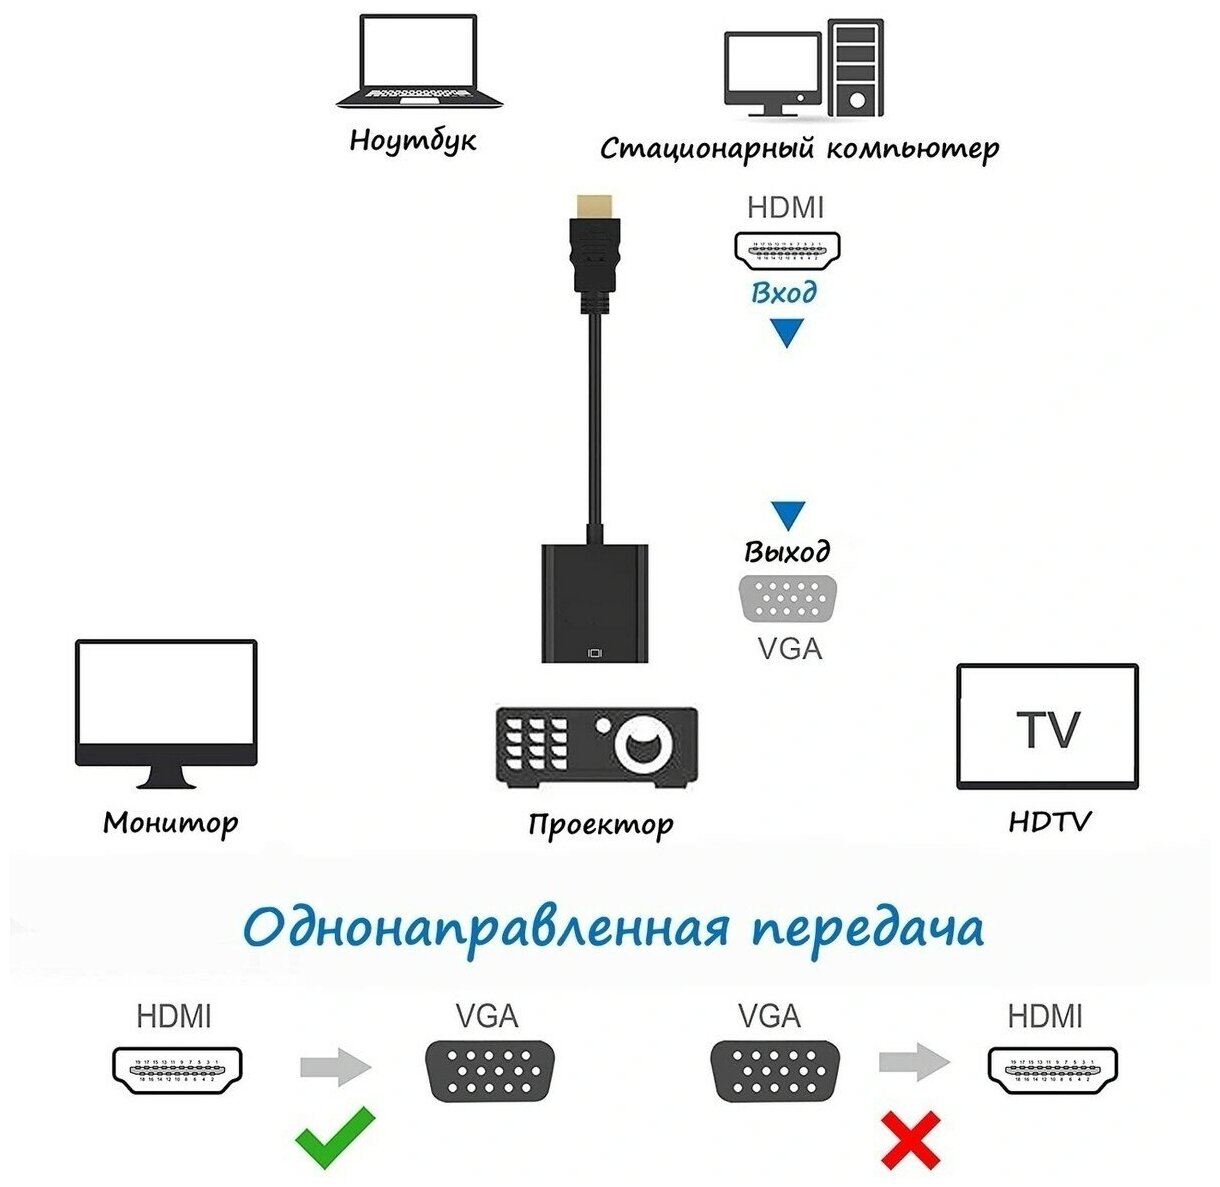 Переходник HDMI VGA адаптер для мониторов, компьютеров, ноутбуков, PC, телевизоров, PS3, PS4, приставок